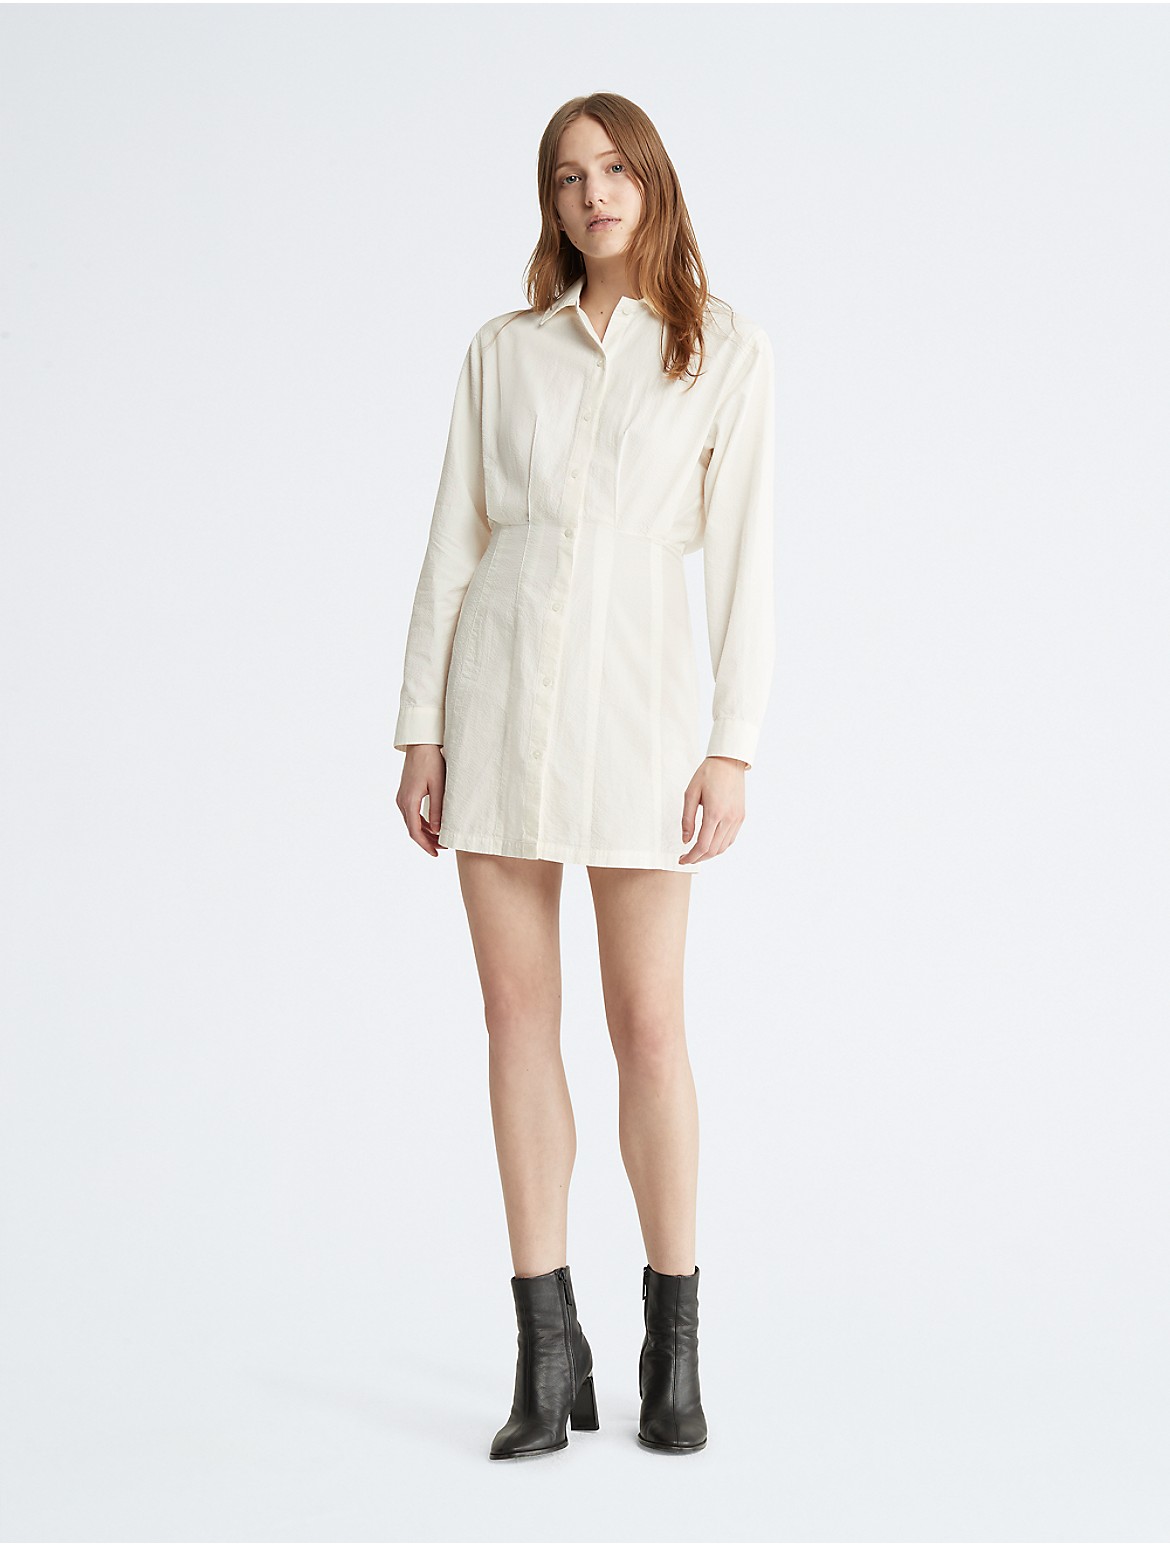 Calvin Klein Women's Button-Down Seersucker Shirt Dress - White - L